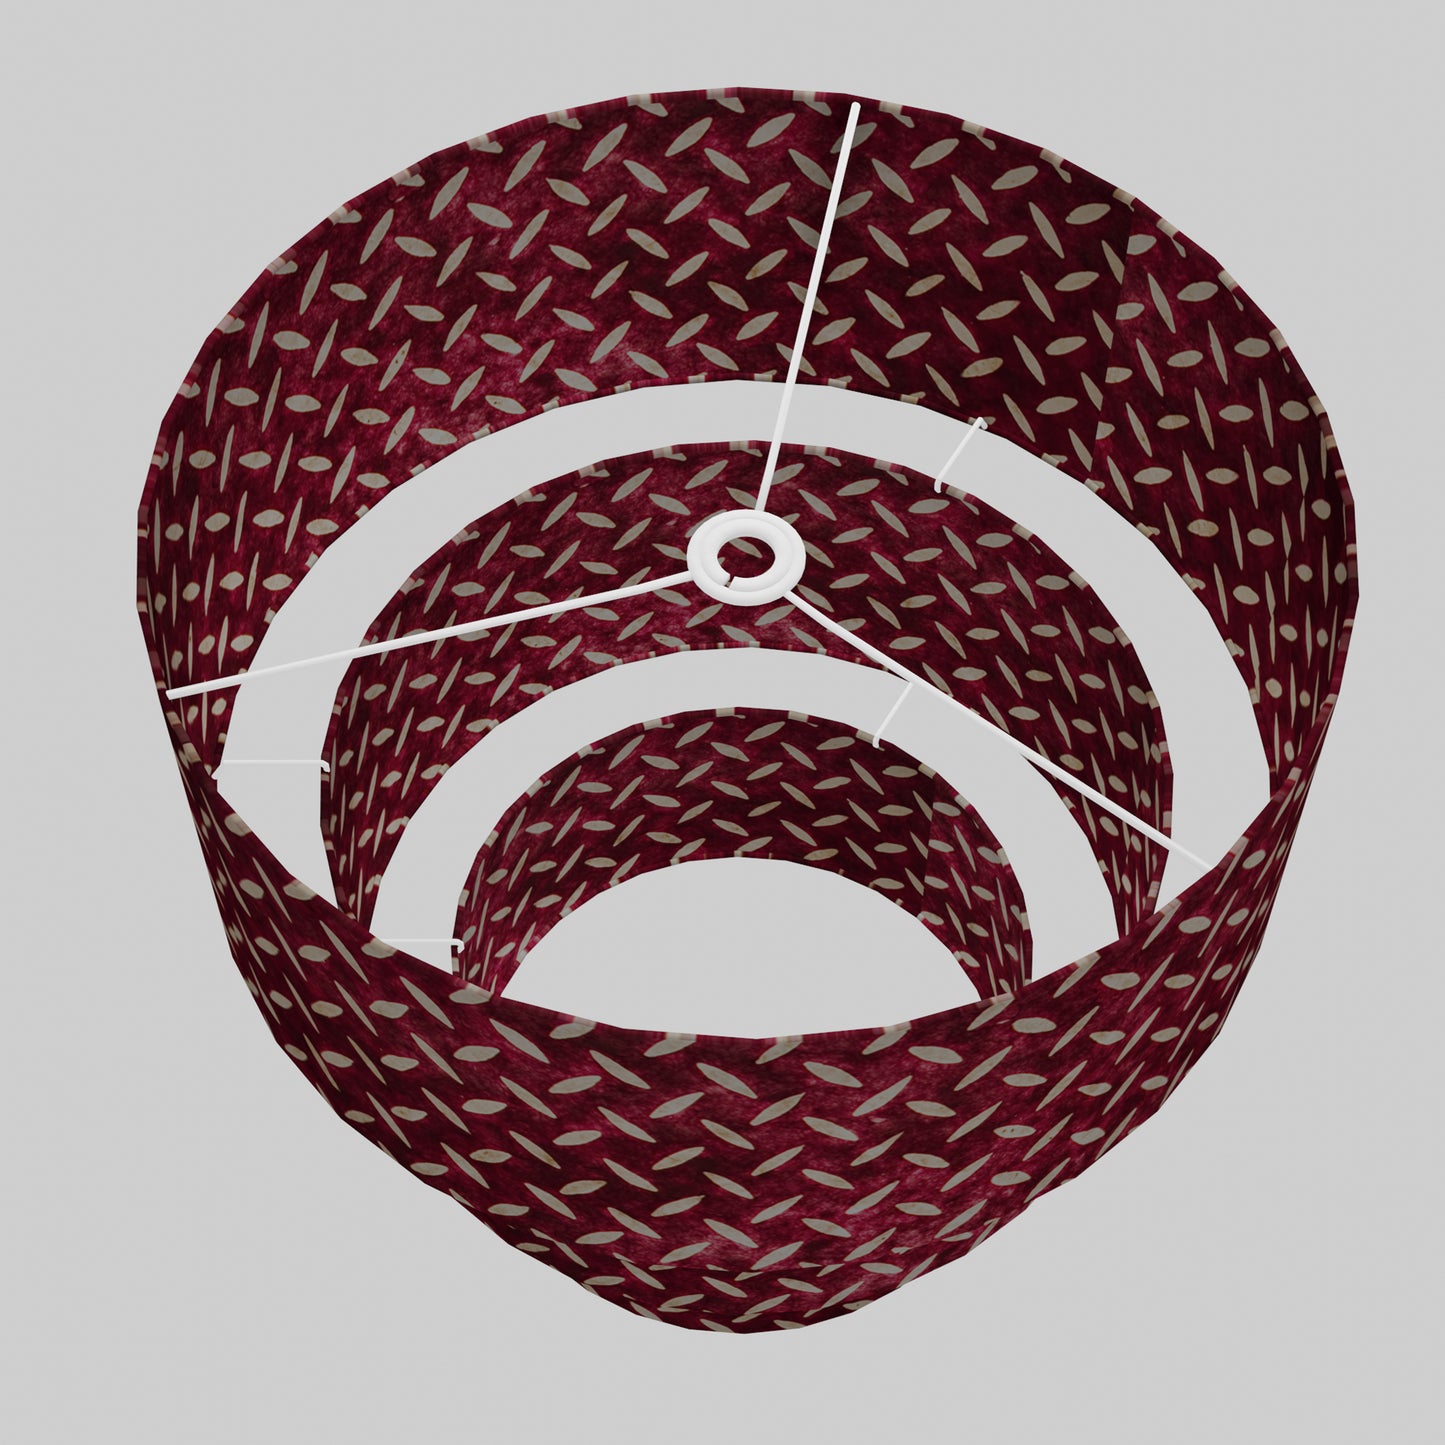 3 Tier Lamp Shade - P14 - Batik Tread Plate Cranberry, 50cm x 20cm, 40cm x 17.5cm & 30cm x 15cm